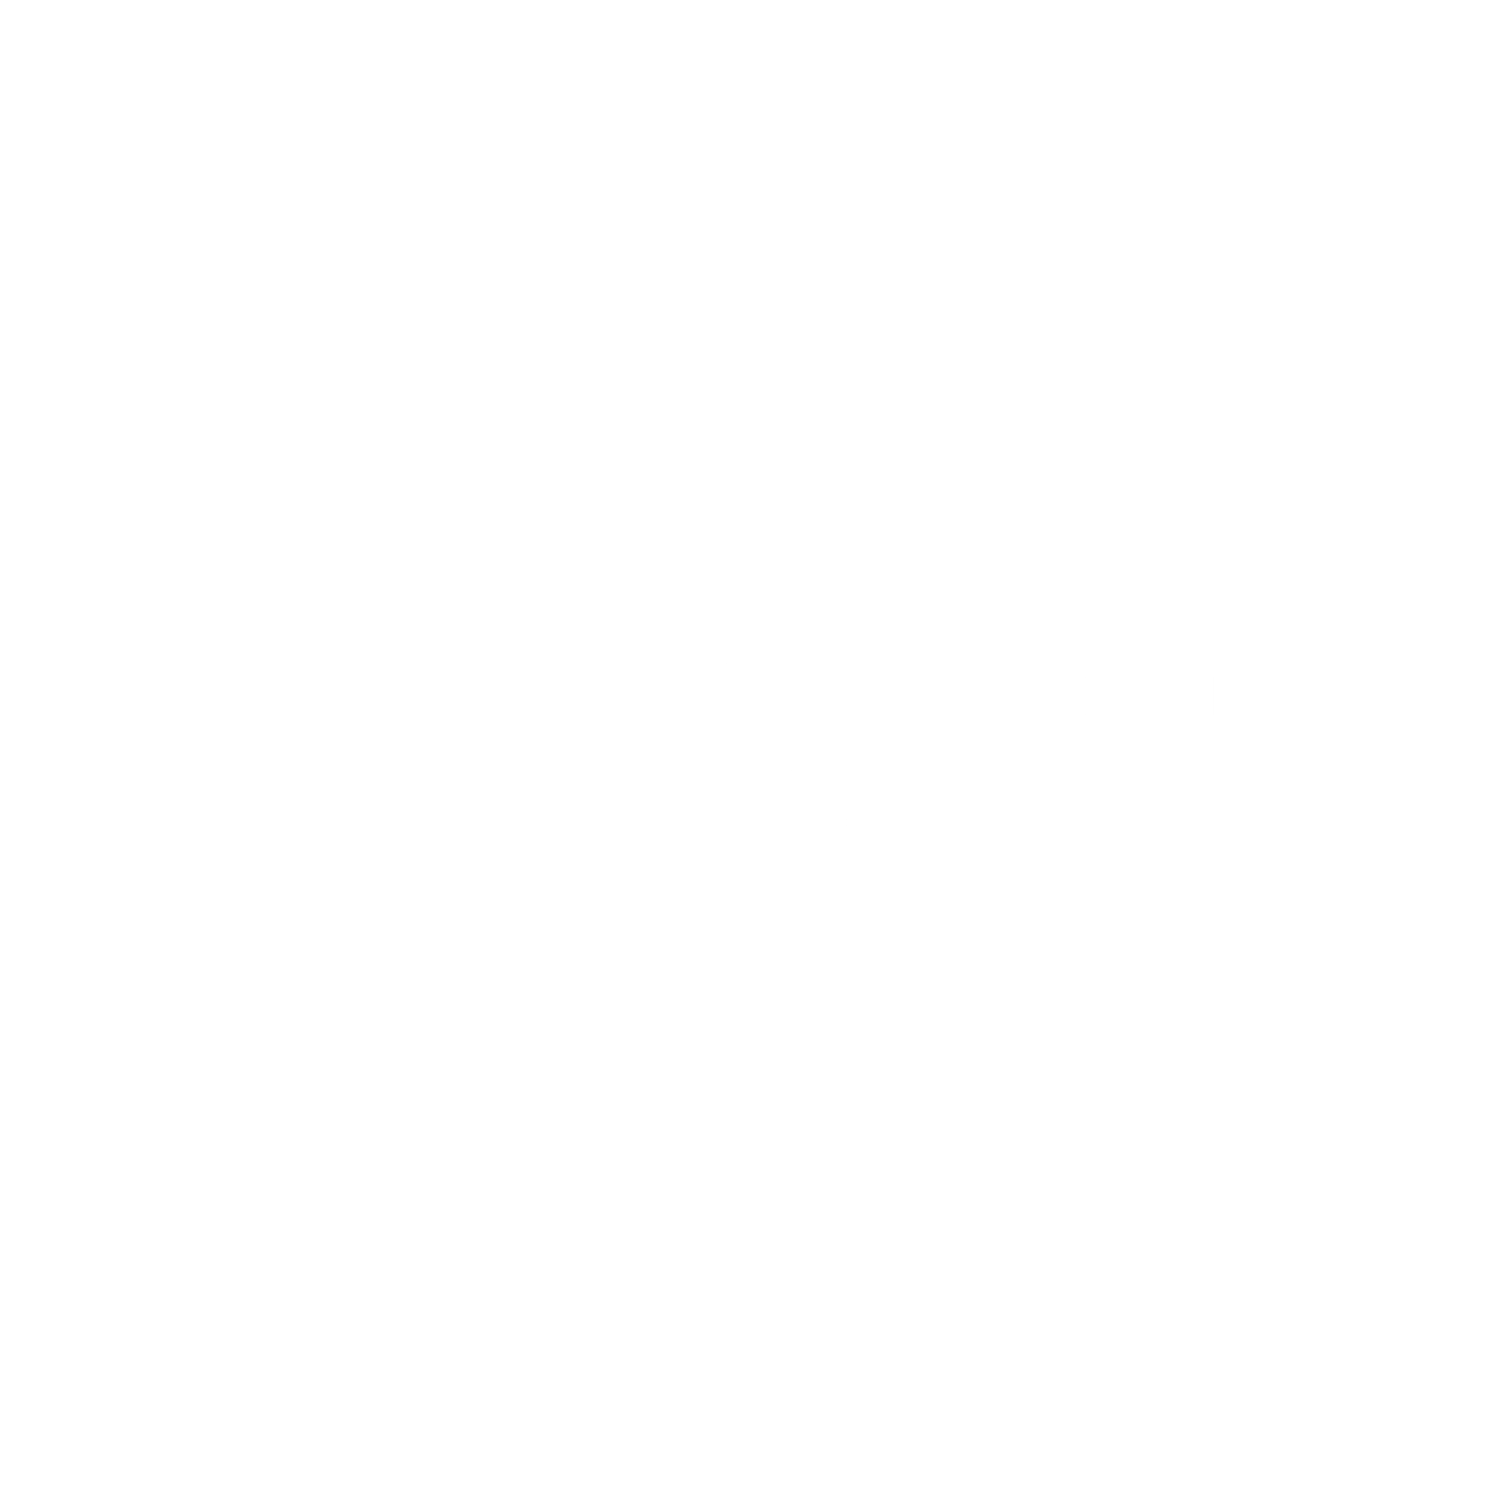 EntheoGenesis